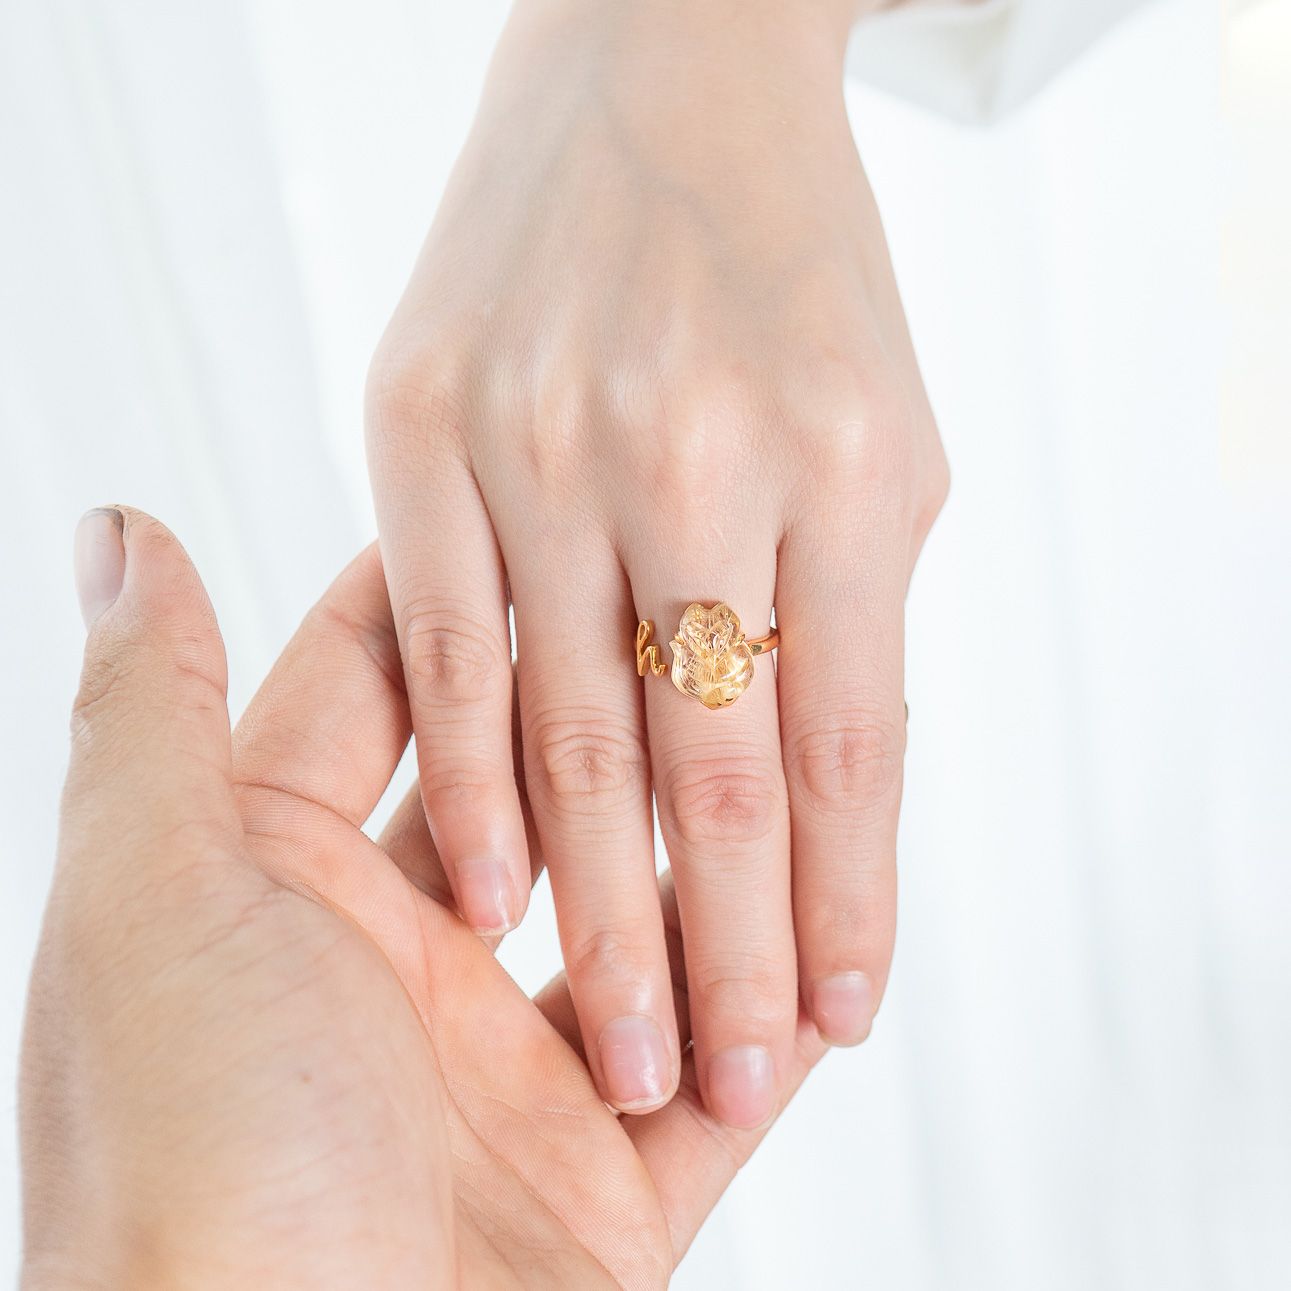 Tại sao bạn đeo một chiếc nhẫn trên ngón tay của bạn?